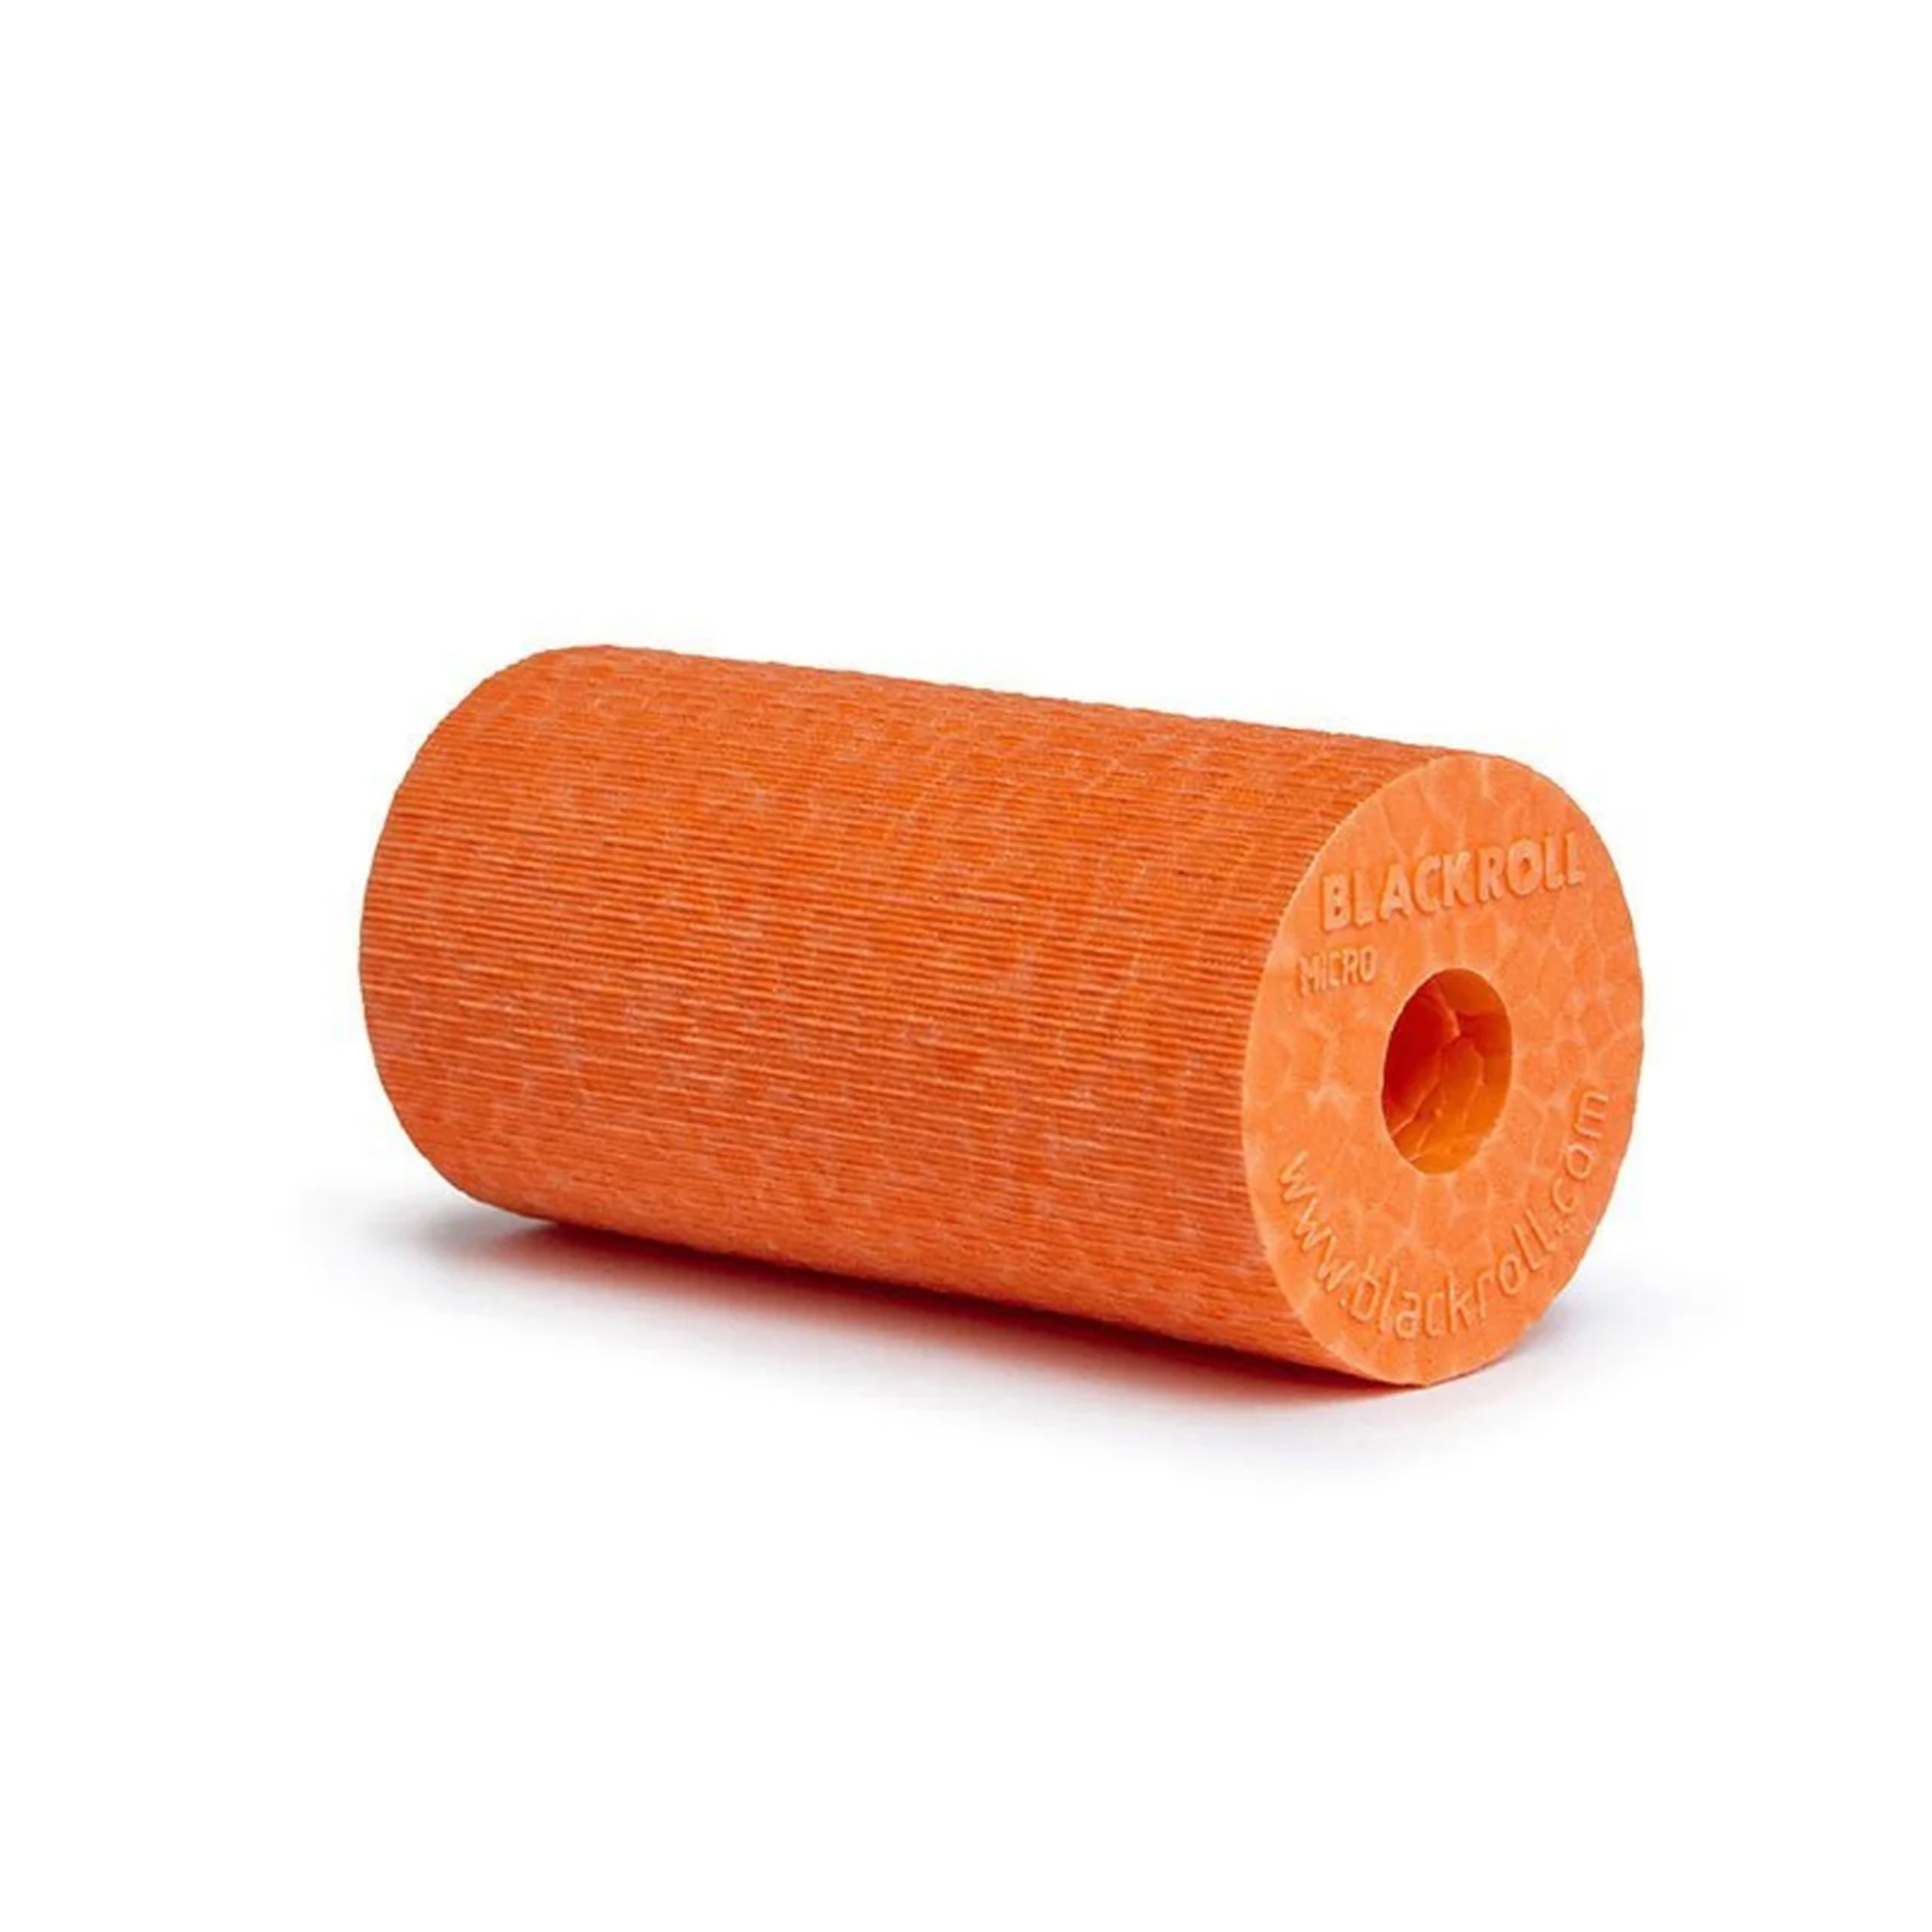 Blackroll Micro Foam Roller Orange - 6x3 cm